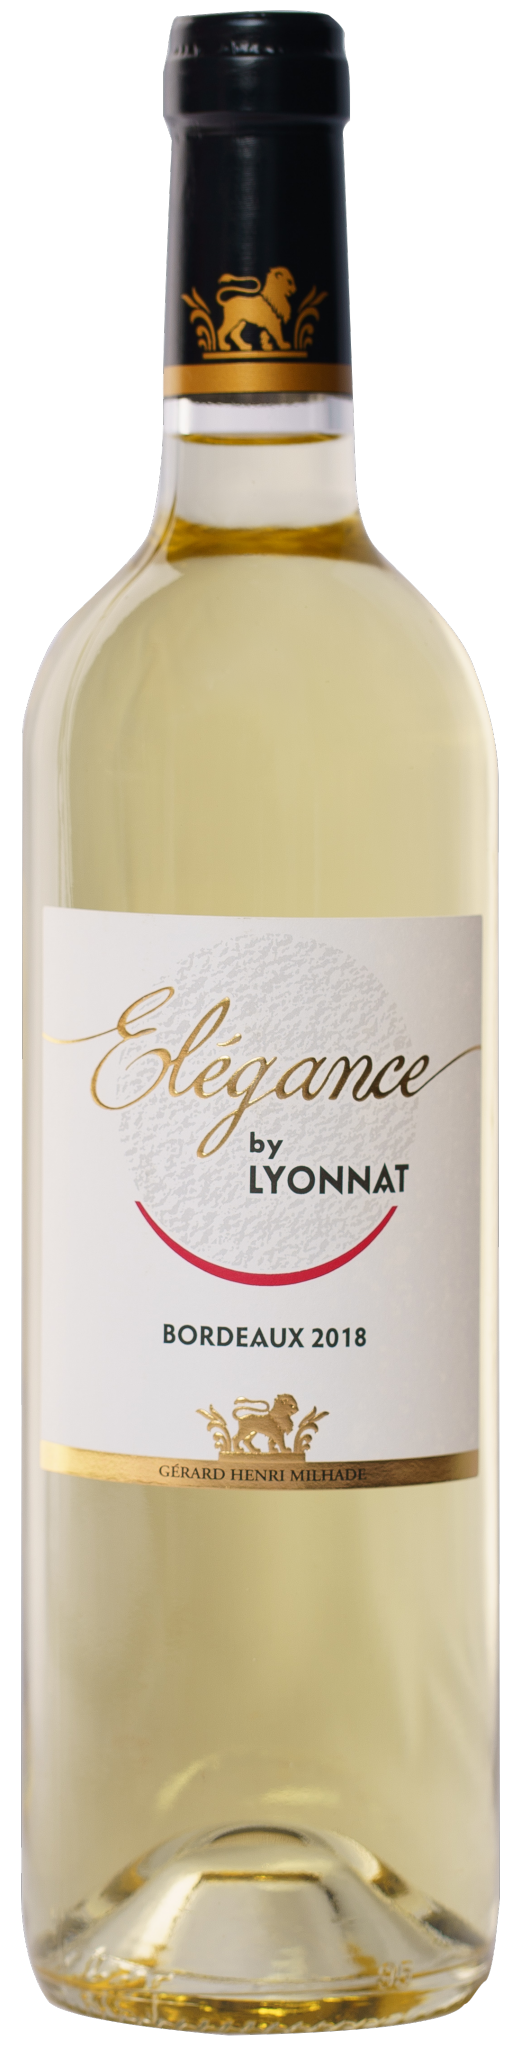 Elegance by Lyonnat, AOP Bordeaux Blanc, 2018